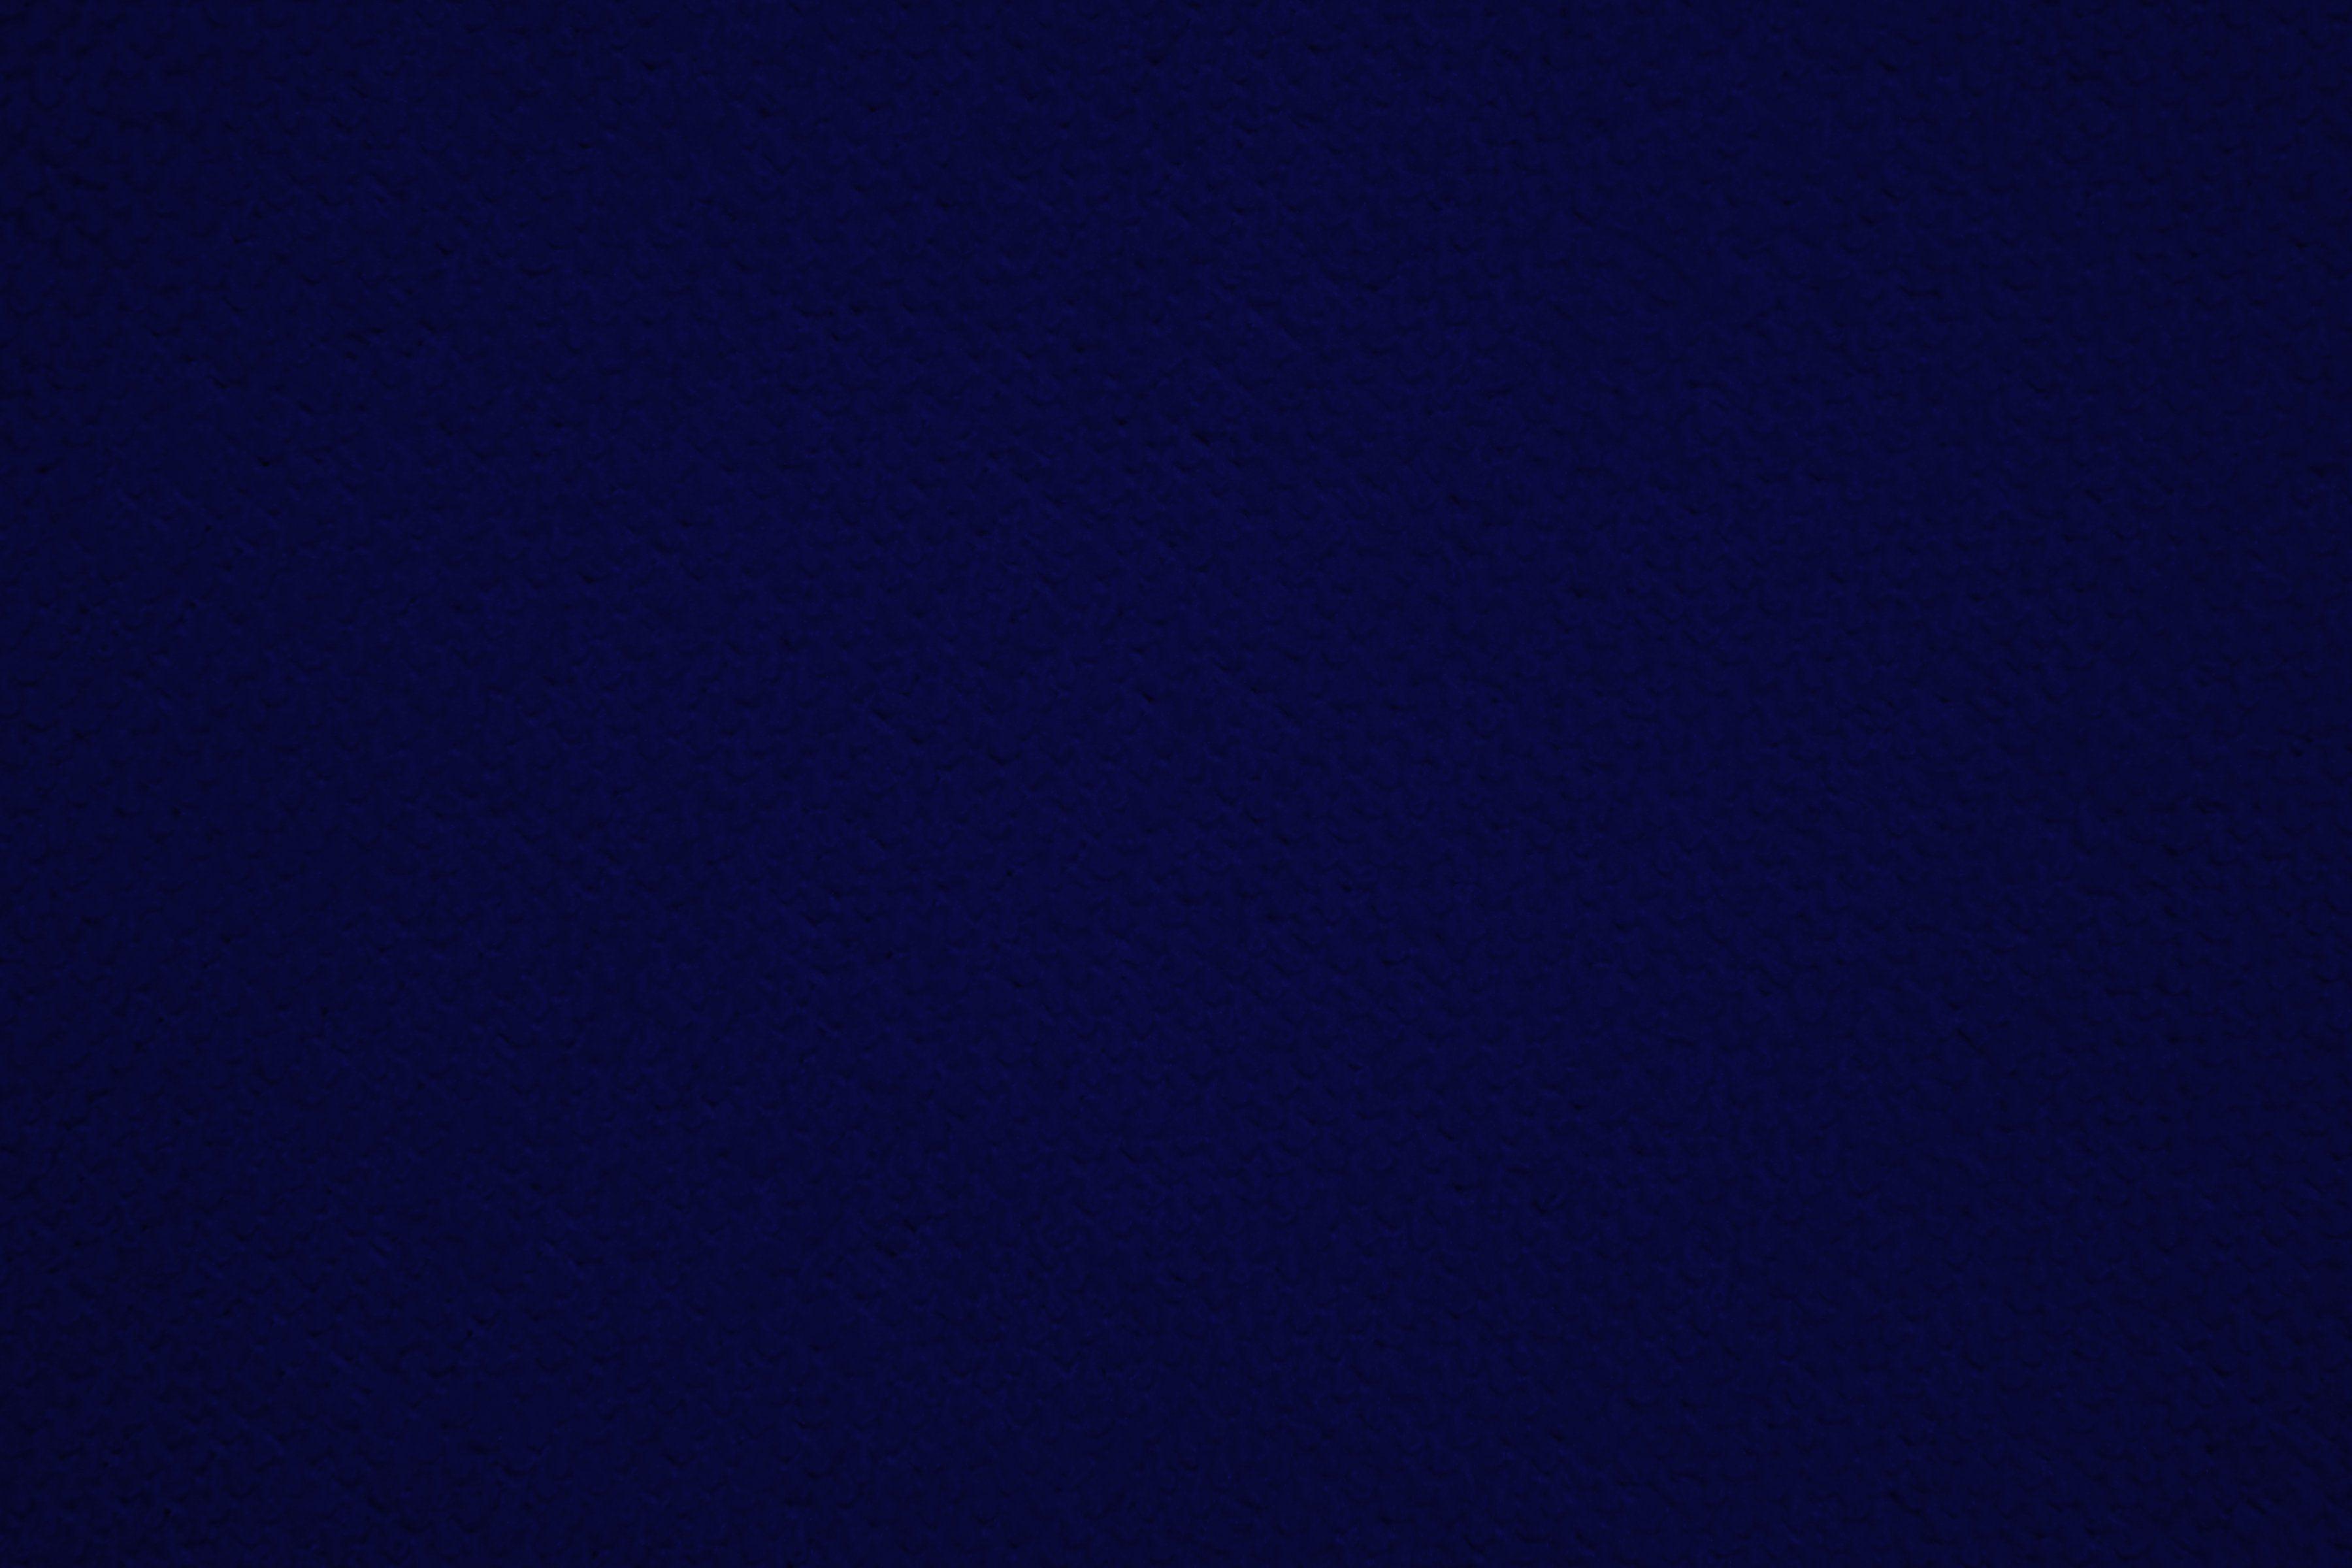 Dark blue HD wallpapers  Pxfuel